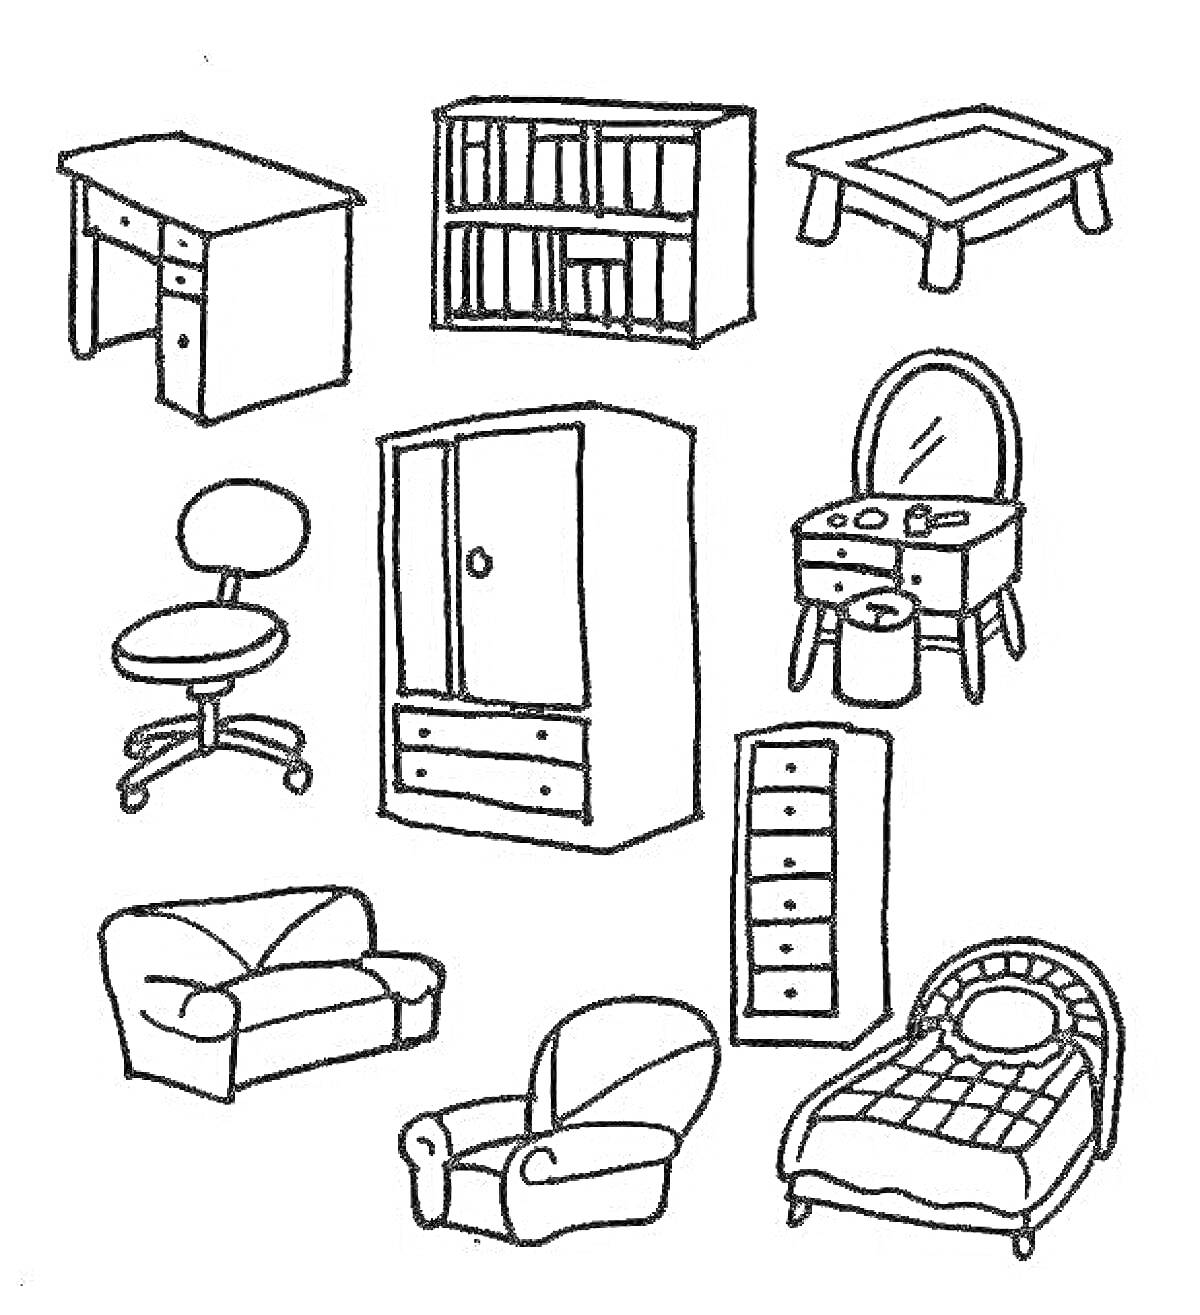 Раскраска Набор мебели для дошкольников: письменный стол с ящиками, книжный шкаф, столик, кресло на колесиках, двустворчатый шкаф с ящиками, туалетный столик с зеркалом и табуретом, диван, кресло, комод с ящиками, детская кровать с покрывалом